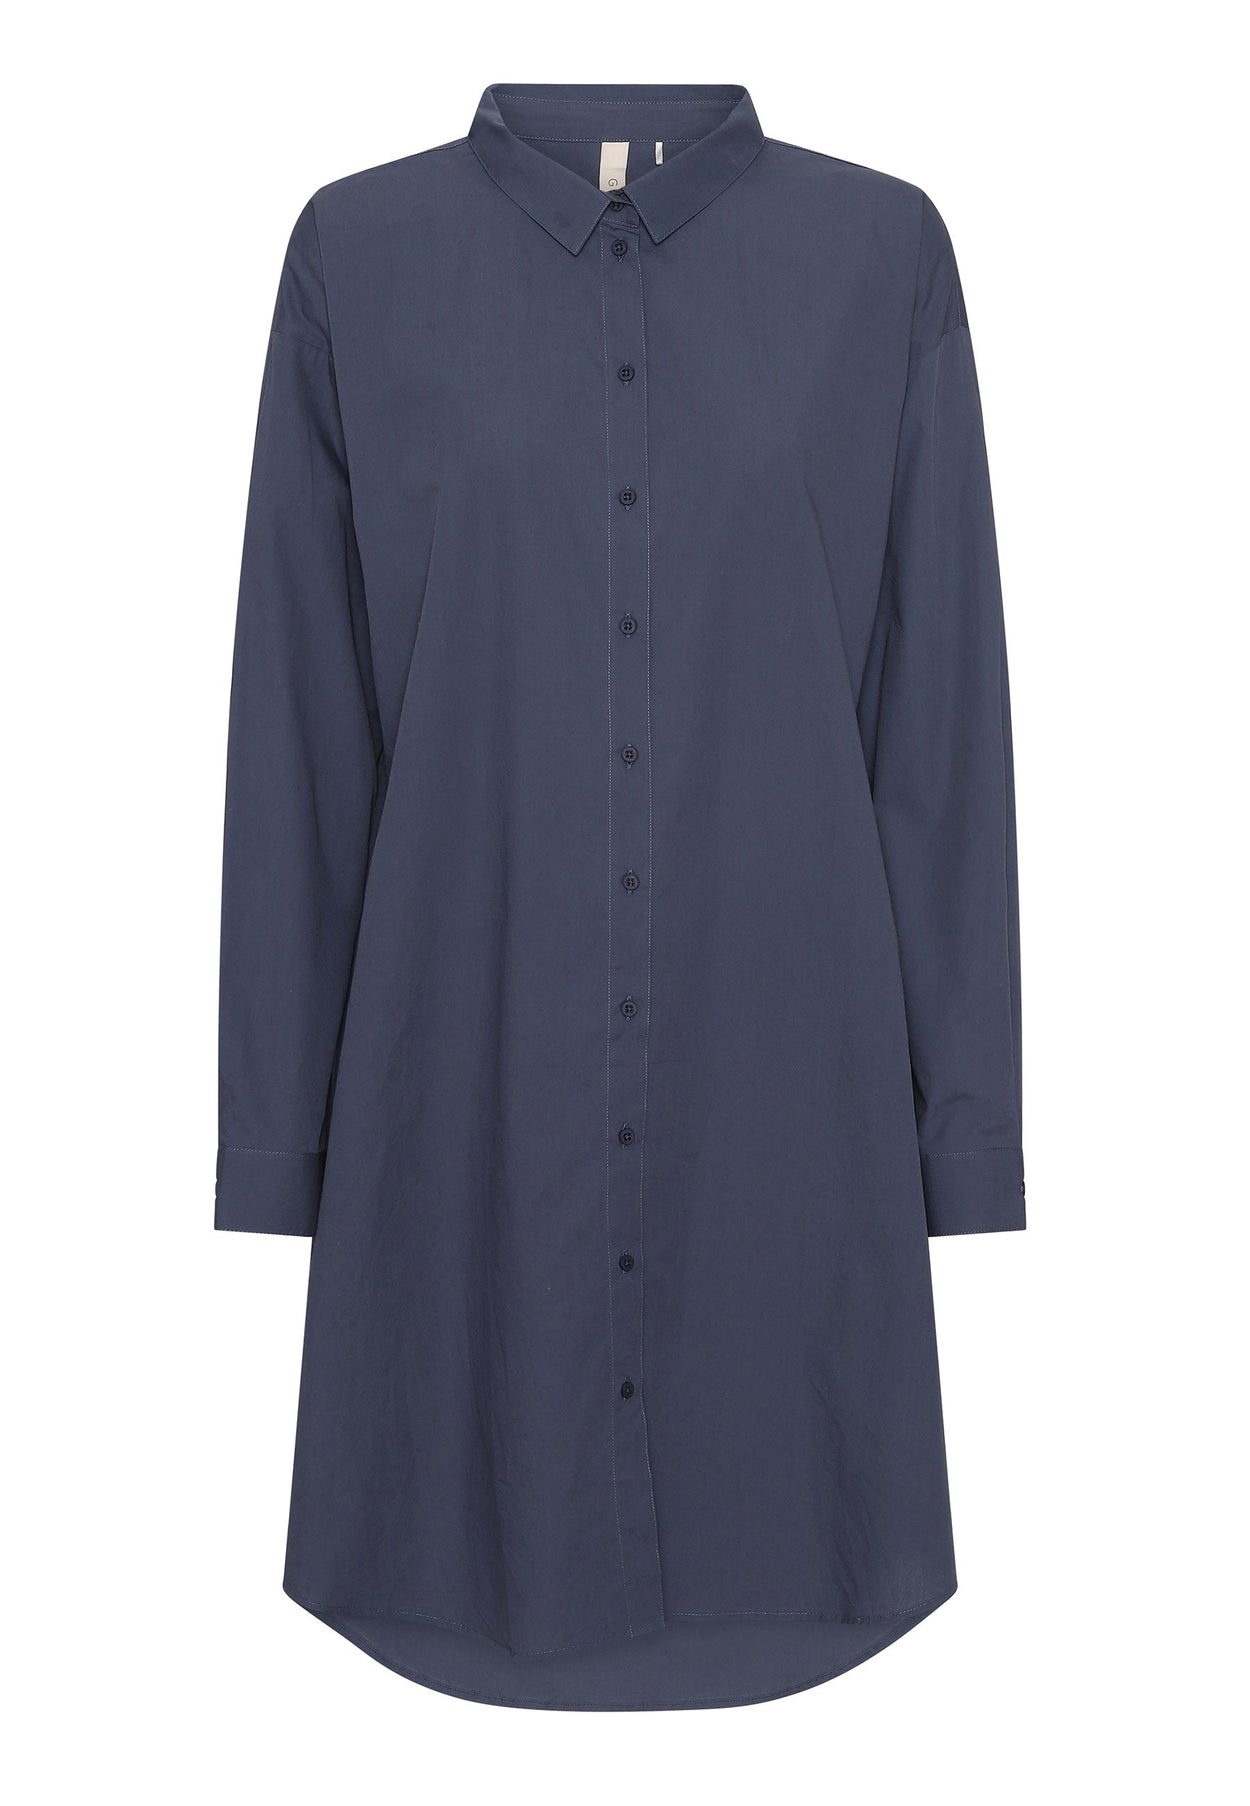 GROBUND Netta skjortekjolen - den i vintage blå